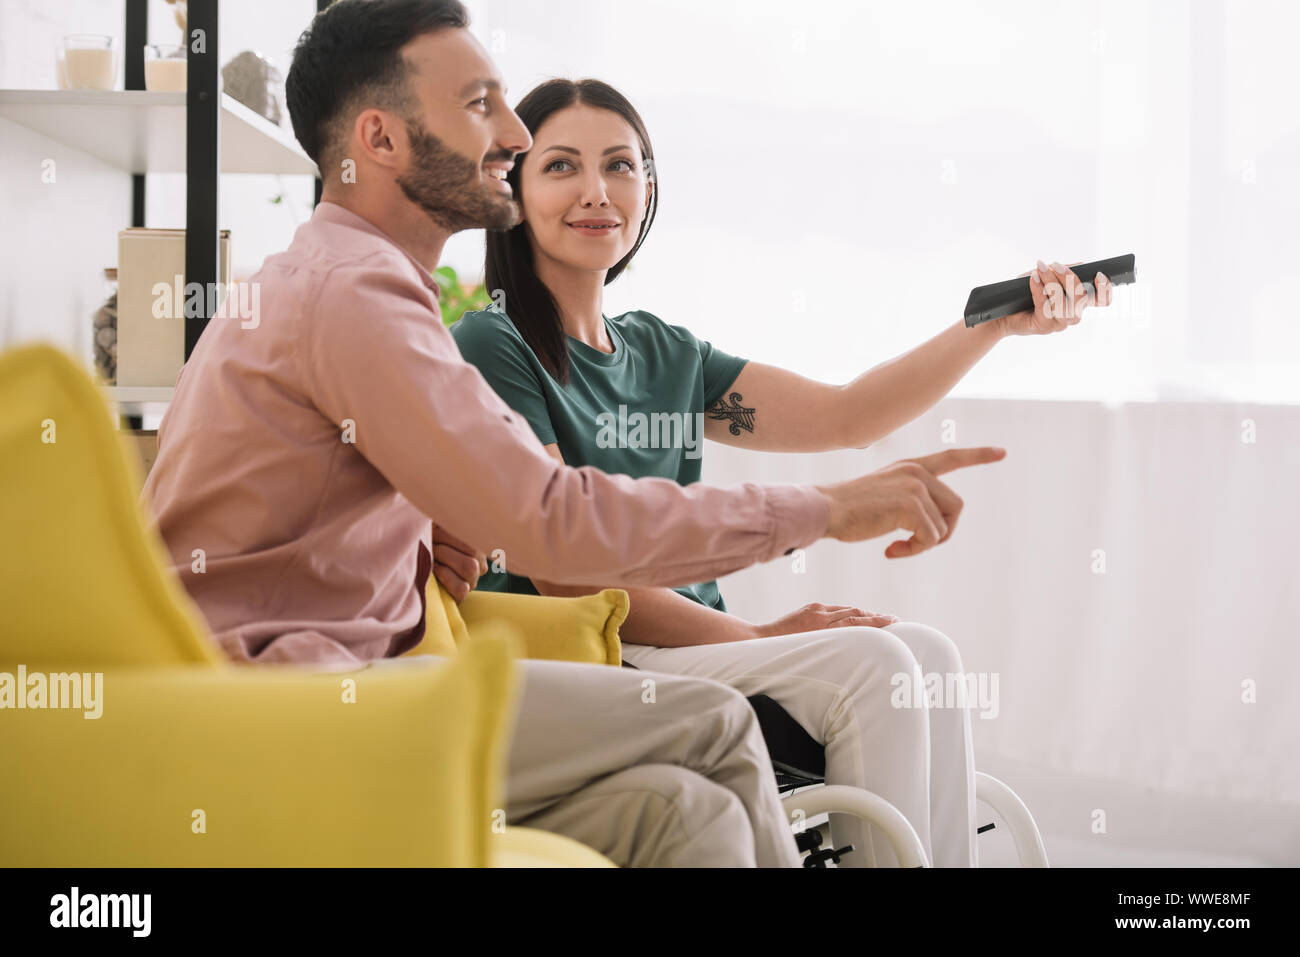 Cheerful homme pointant avec le doigt tout en regardant la tv avec mobilité petite amie Banque D'Images